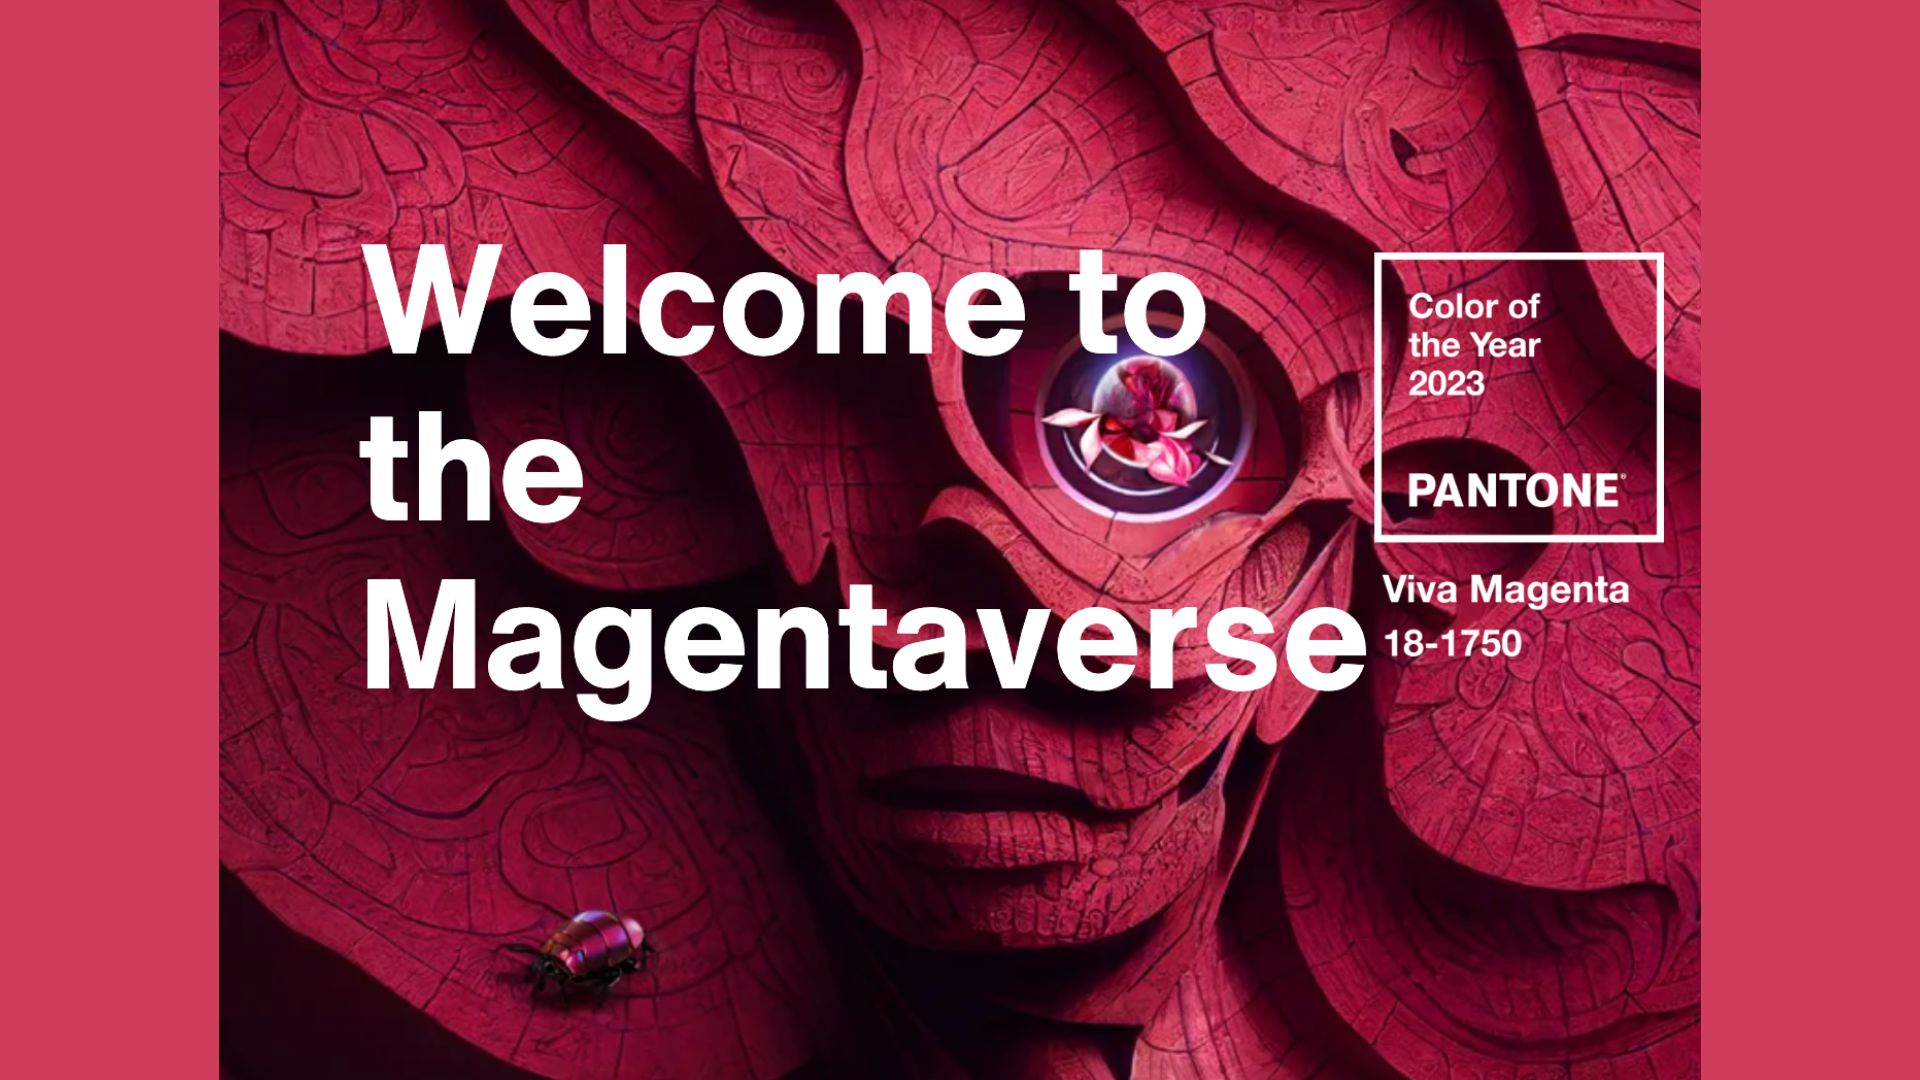 Le Viva Magenta, élu couleur de l’année 2023 par Pantone